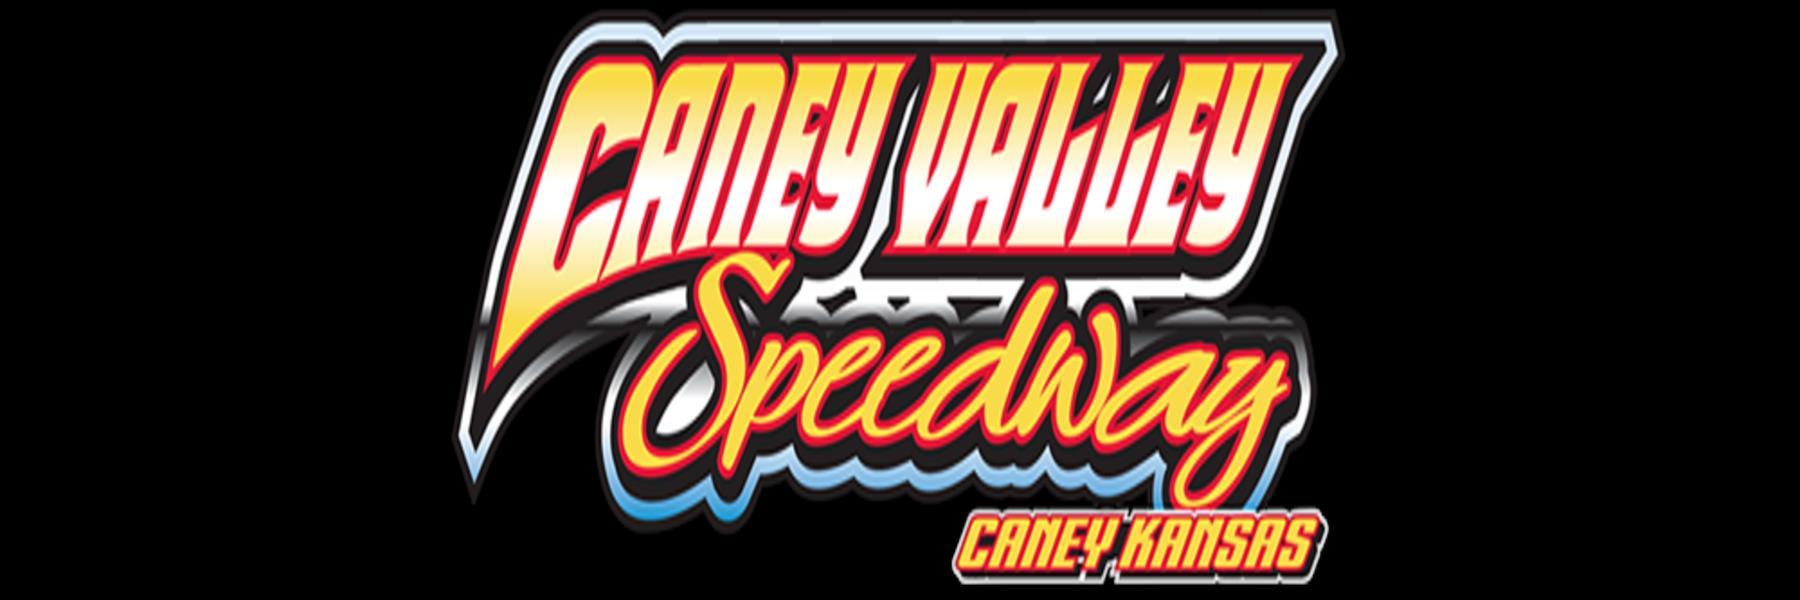 10/7/2022 - Caney Valley Speedway